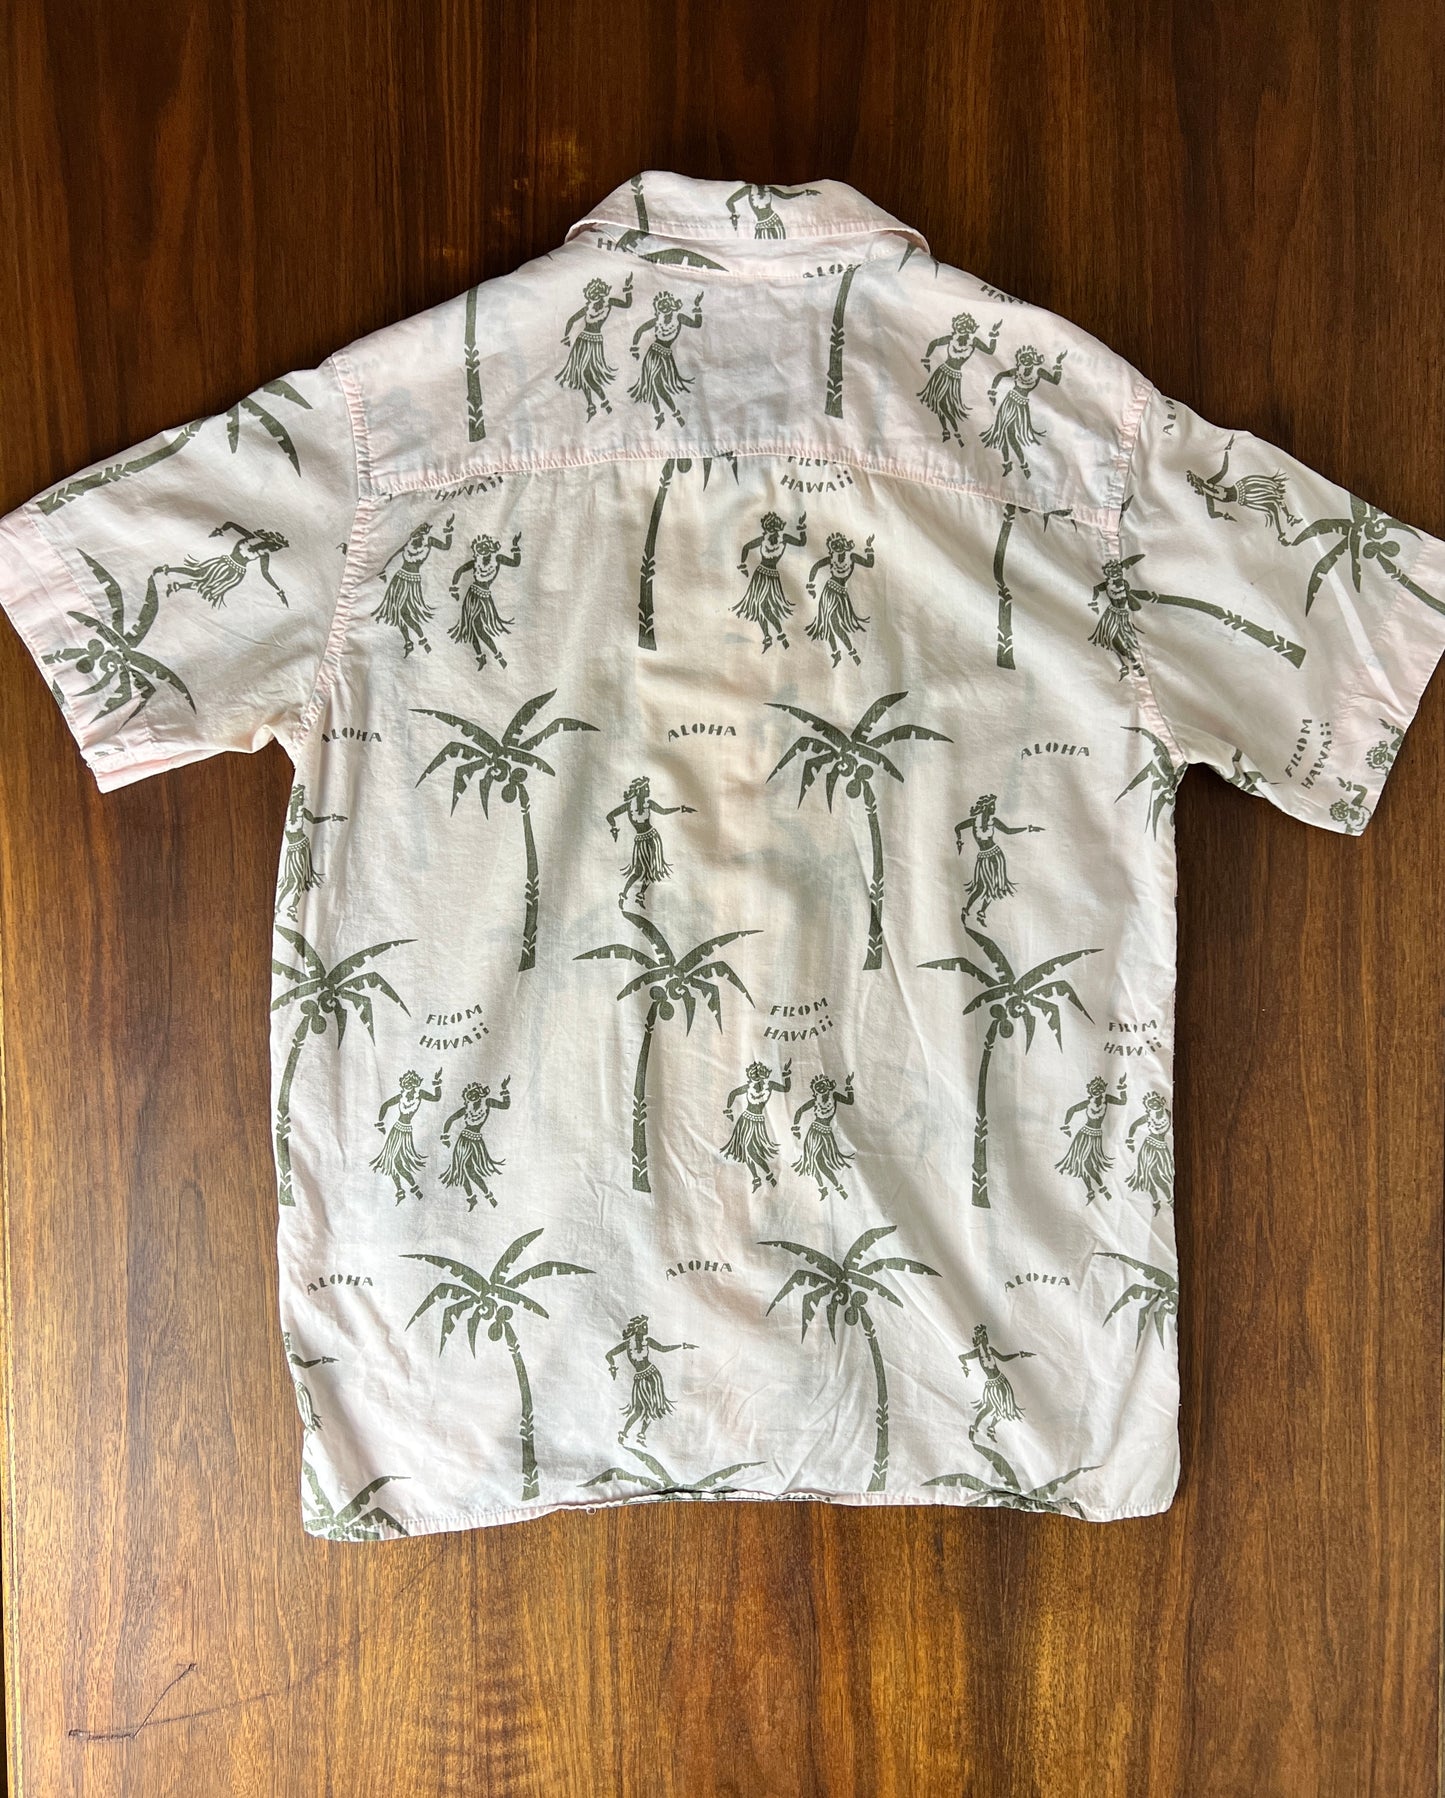 The Aloha Shirt